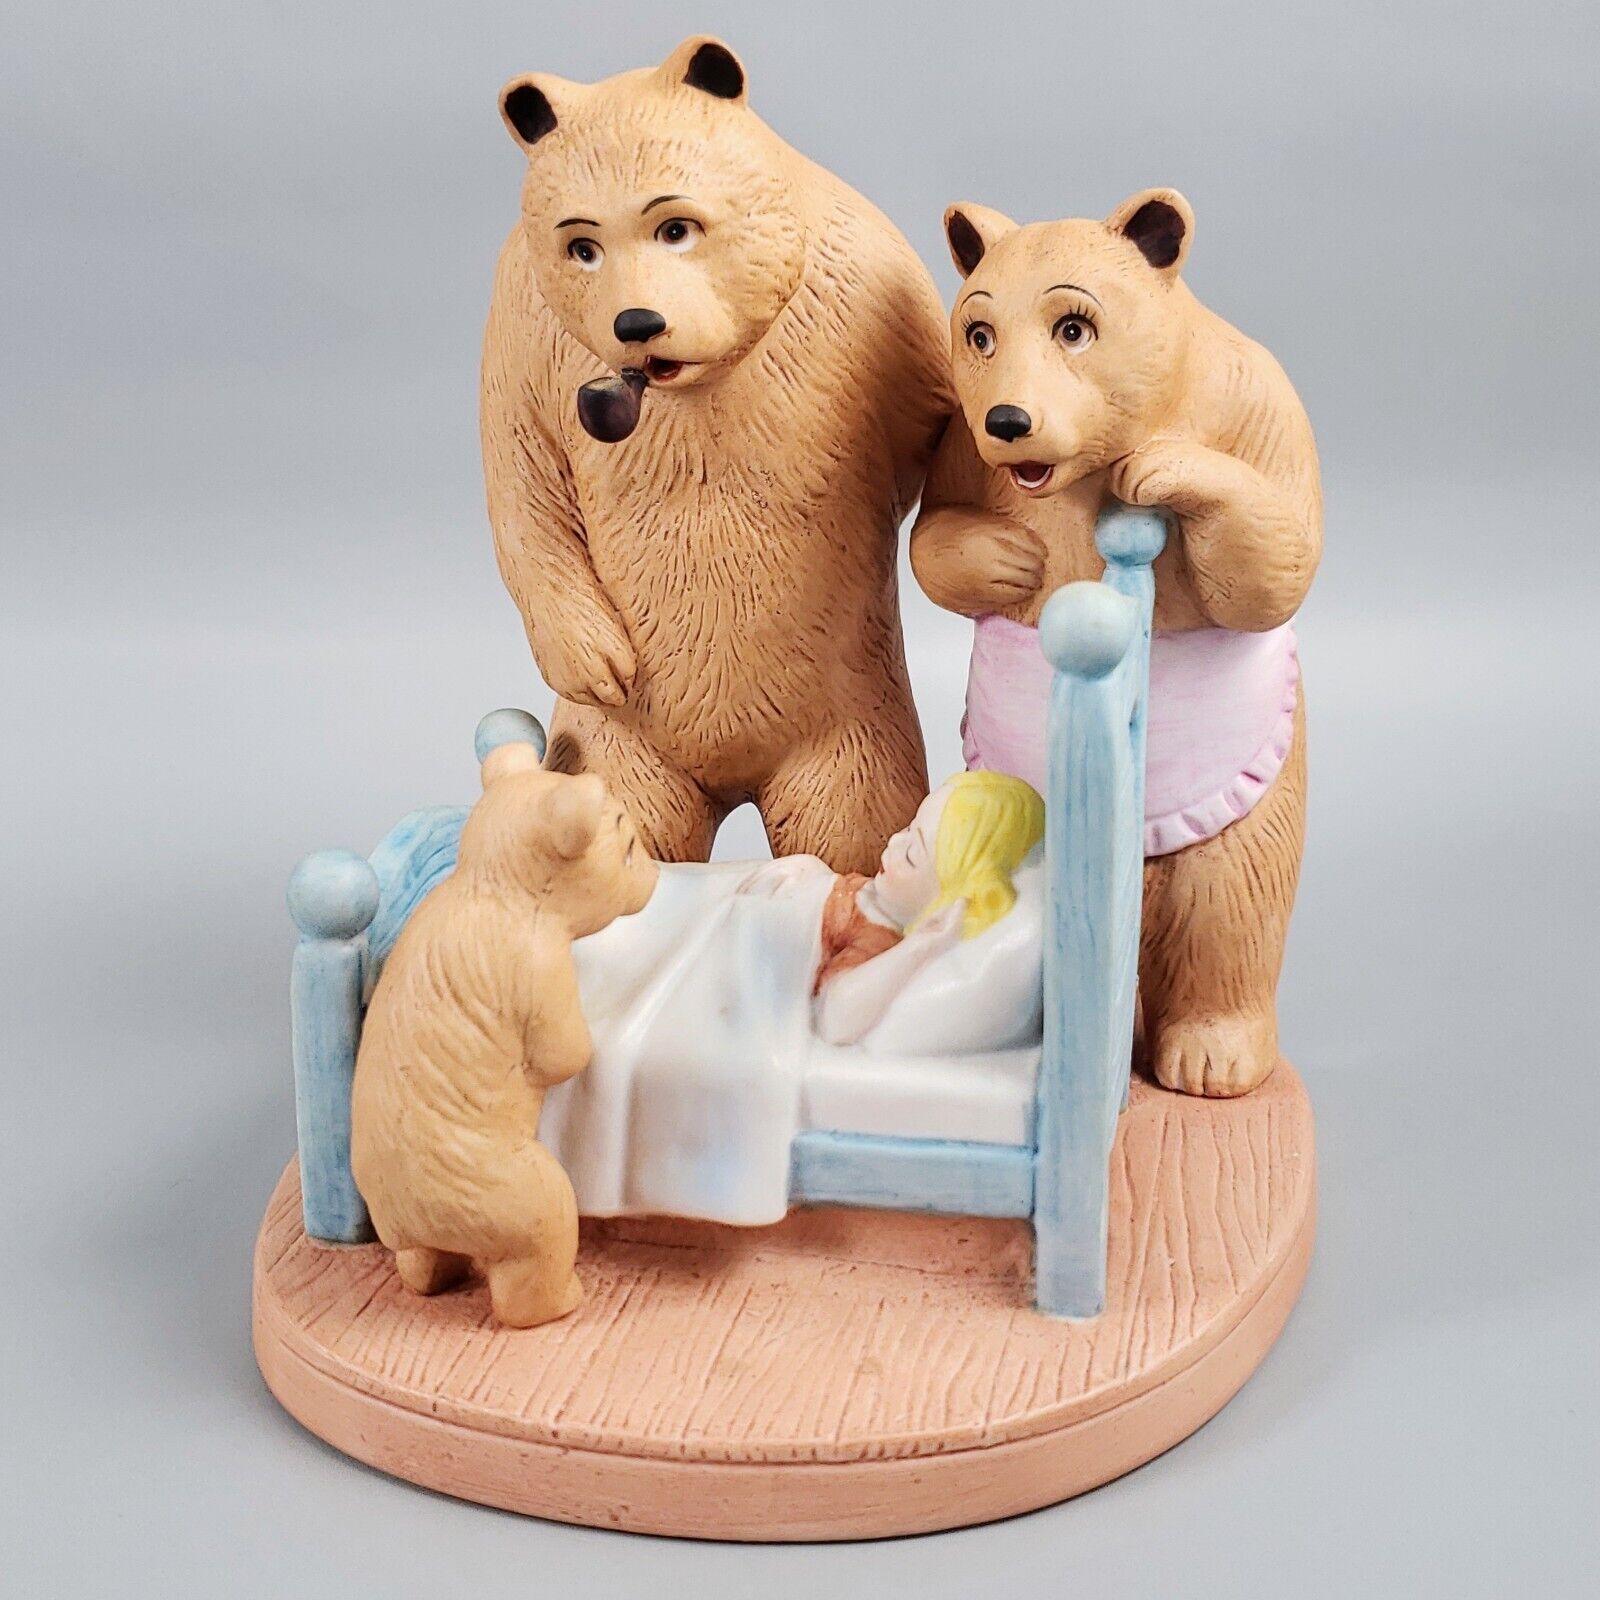 Goldilocks & The Three Bears Danbury Mint Fairy Tales Porcelain Figurine Vintage